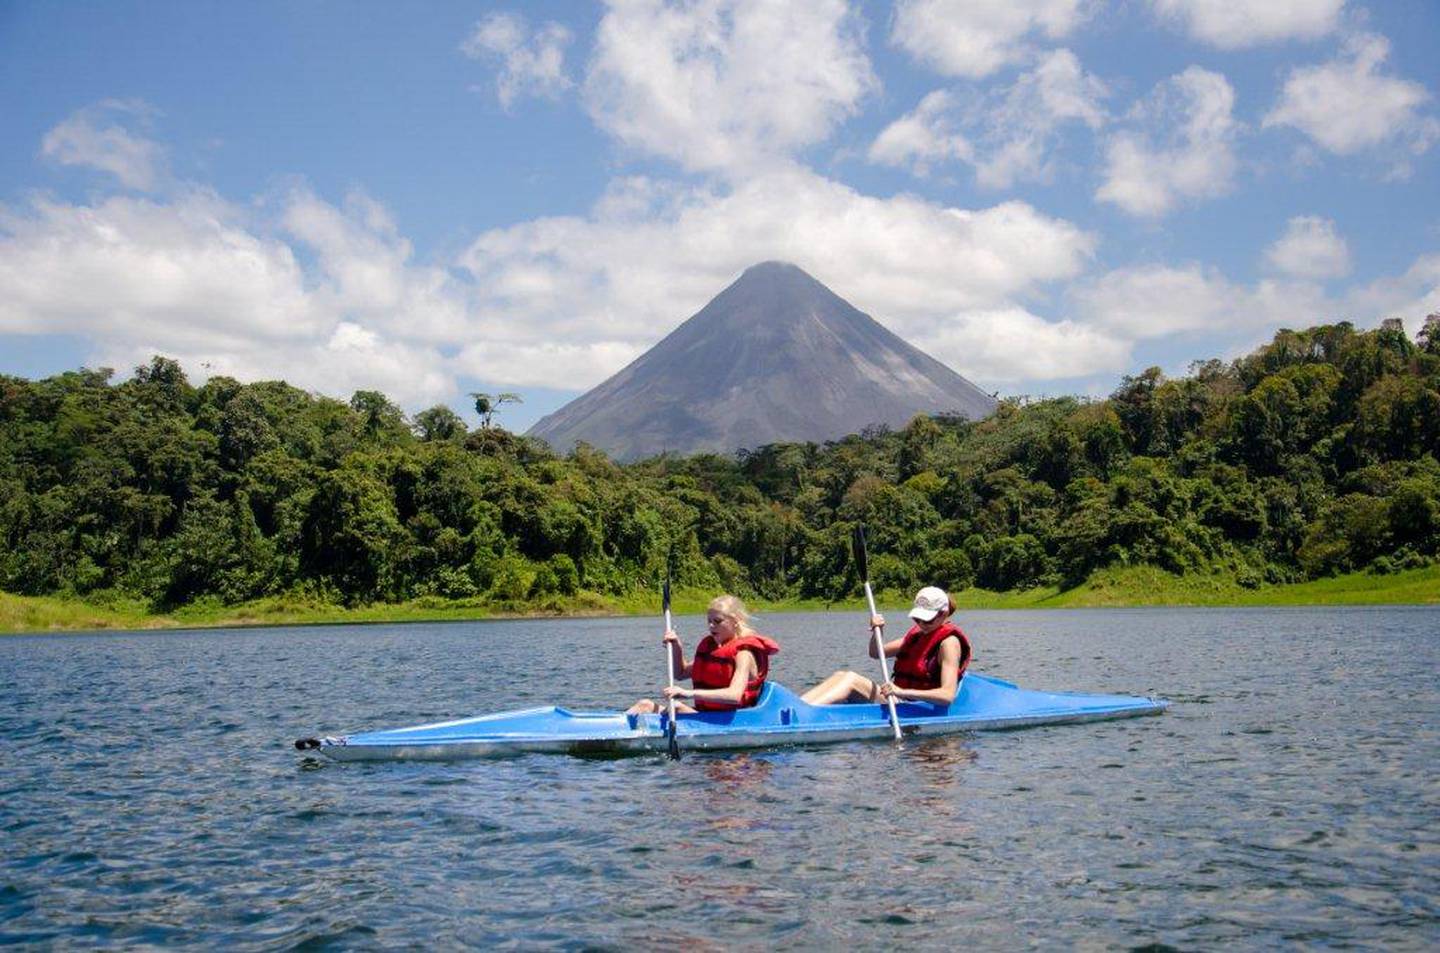 Actividades como kayac, paseos en bote o en barco y pesca ofrece la empresa Aventuras Arenal en el lago ubicado en la zona norte del país, con la belleza escénica del cono volcánico. Foto: Cortesía Aventuras Arenal